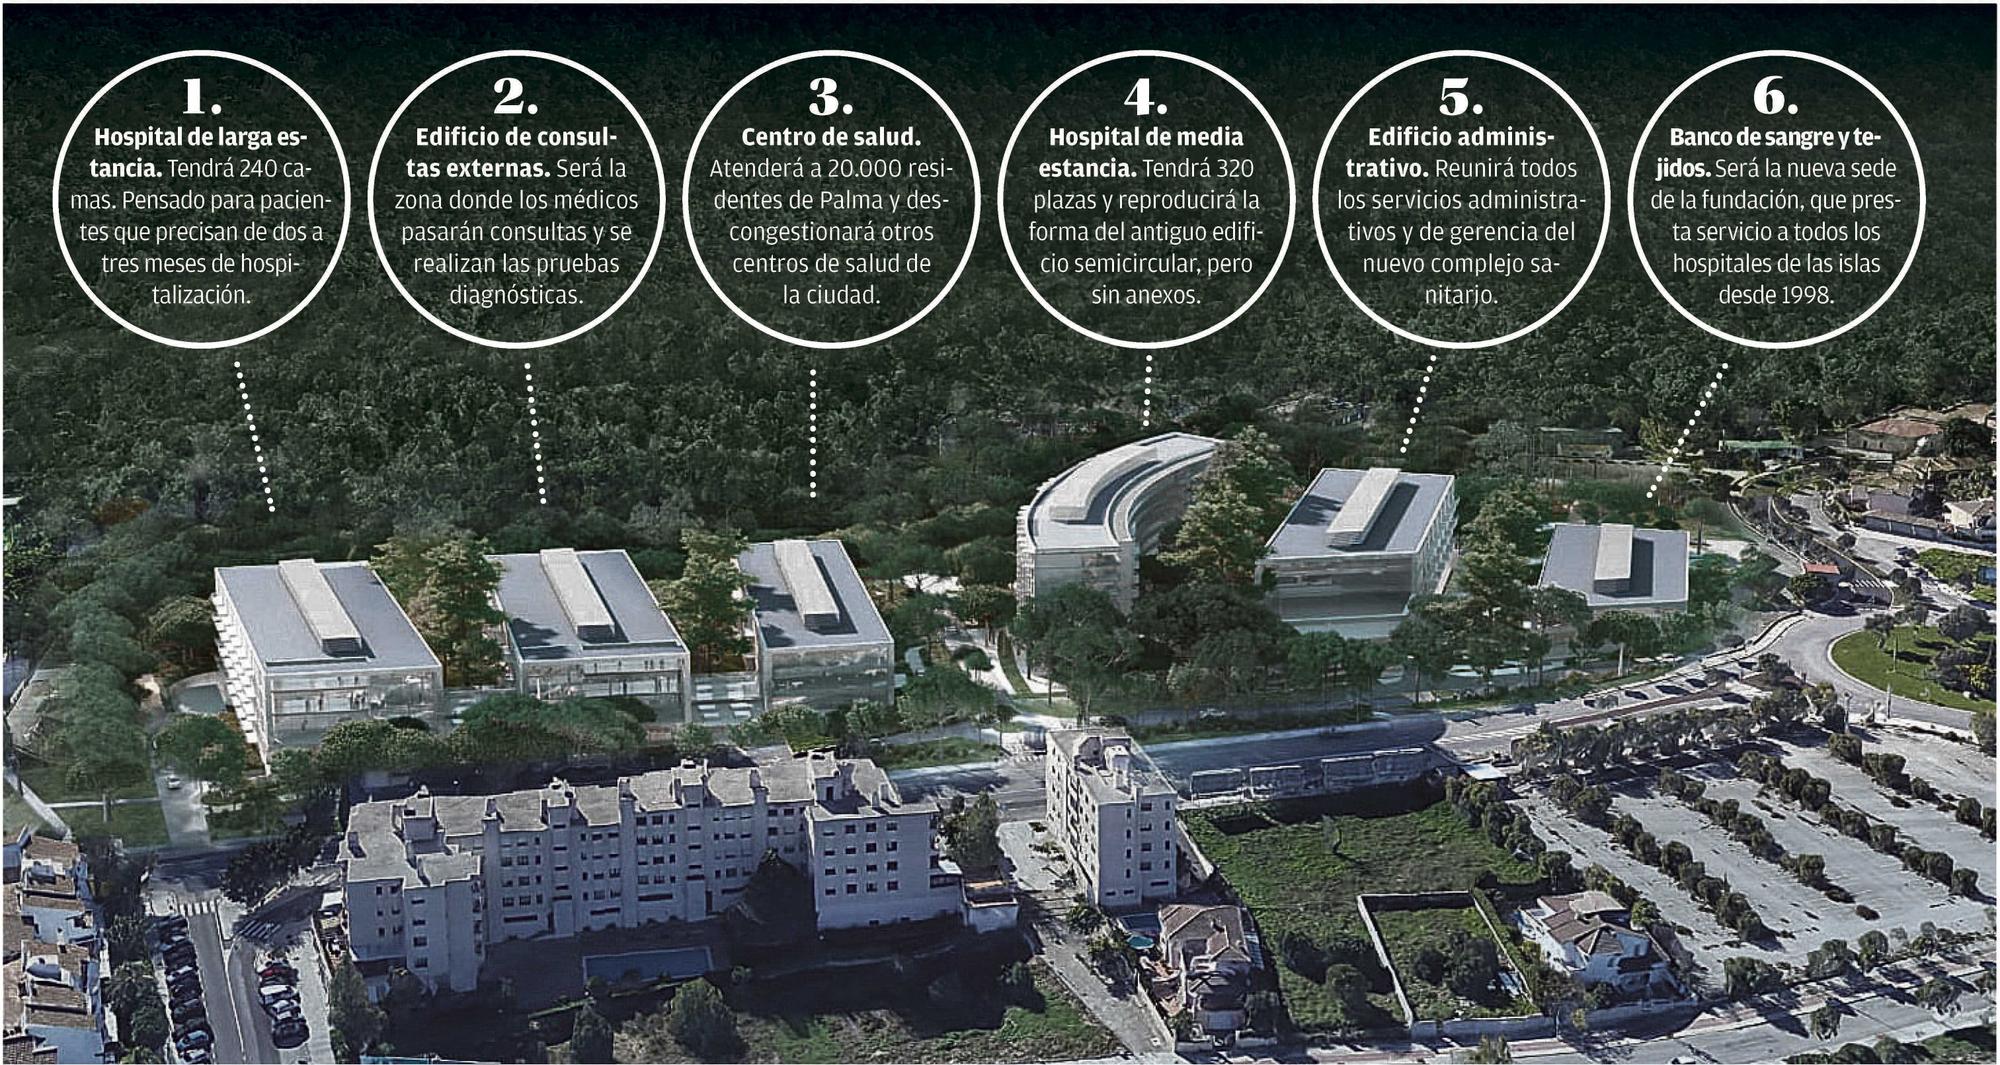 Los seis nuevos edificios del nuevo complejo de Son Dureta ocuparán una superficie de 32.000 metros cuadrados.